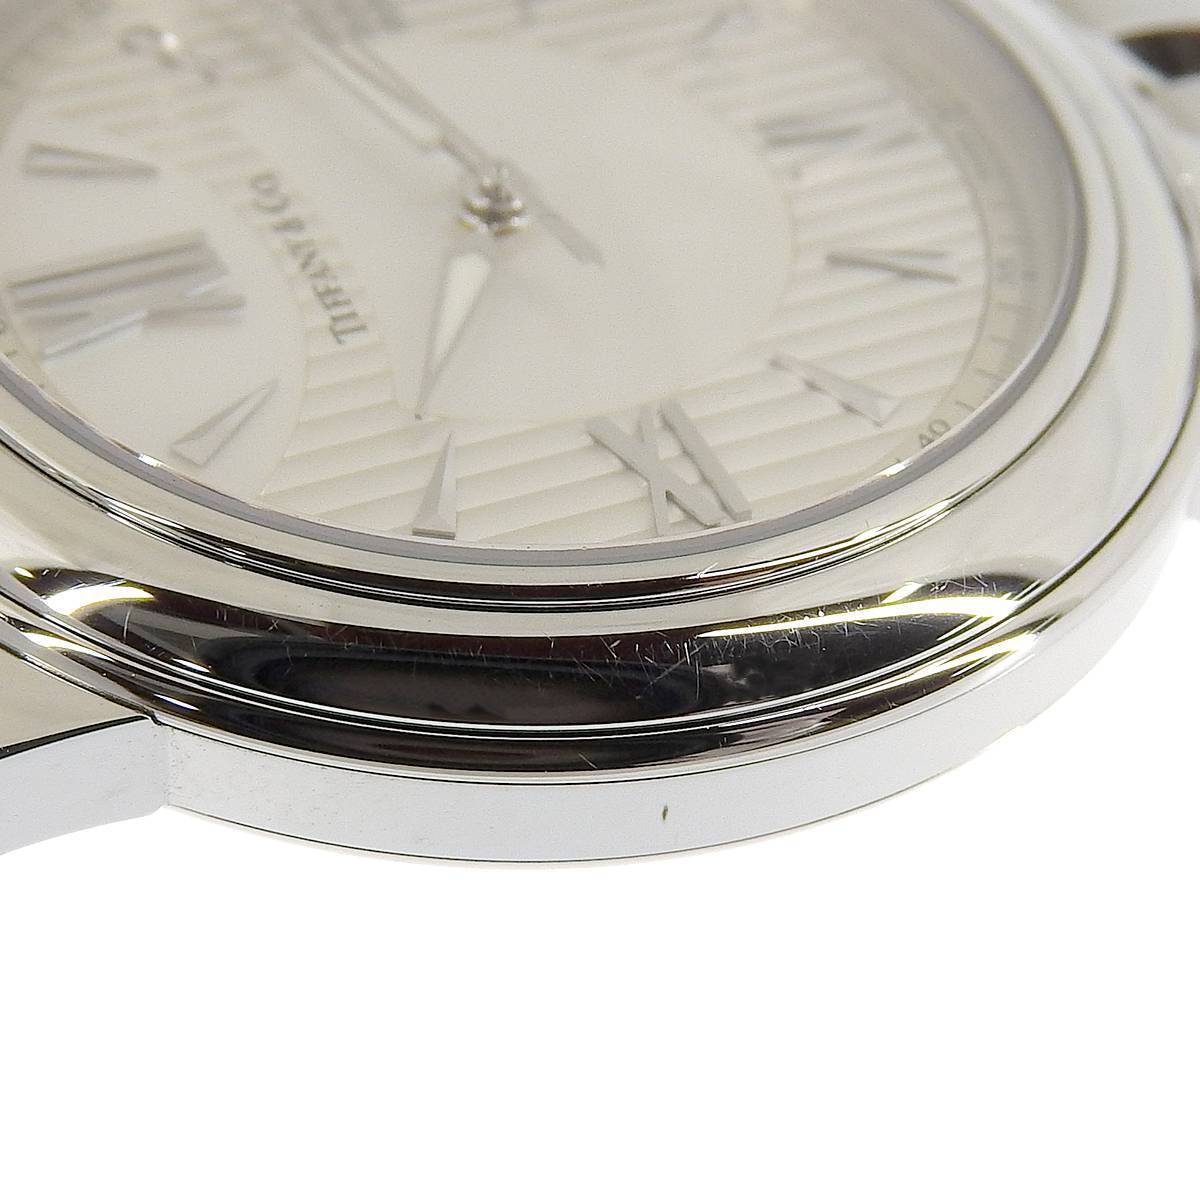 ティファニー TIFFANY & Co. マーク クォーツ 腕時計 SS ステンレス アイボリー系 シェル文字盤 メンズ 4198_画像6